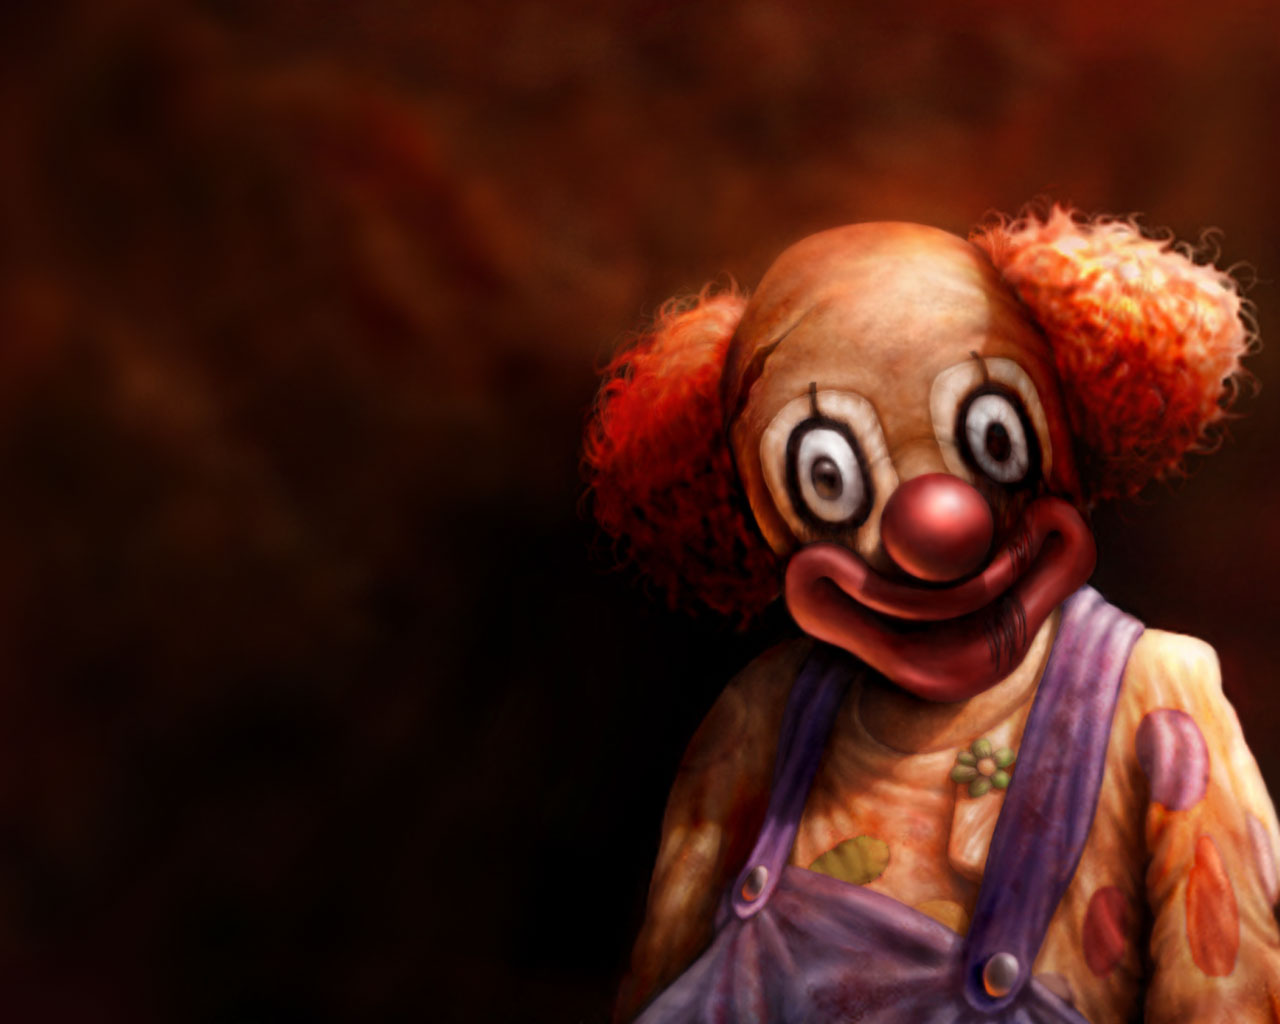 il clown fond d'écran,rouge,pitre,sourire,animation,illustration